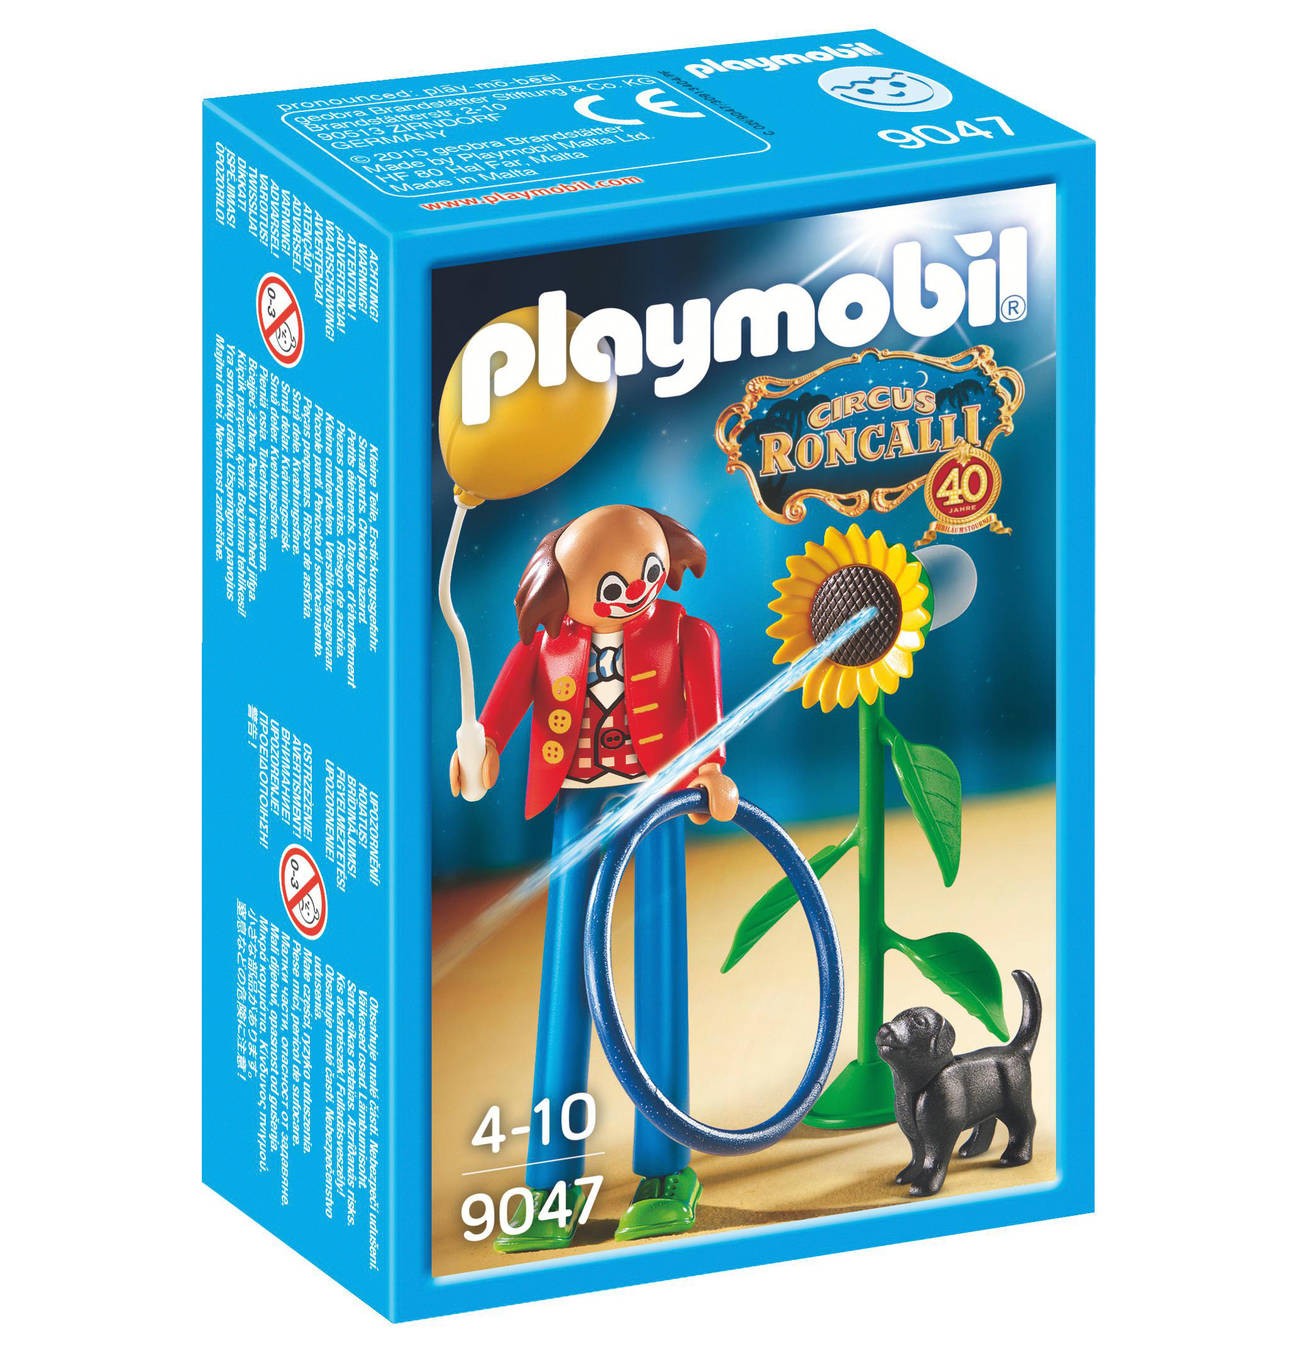 clown of the circus Roncalli - Playmobil - Playmobileros - Tienda de Playmobil Nuevo y Ocasión